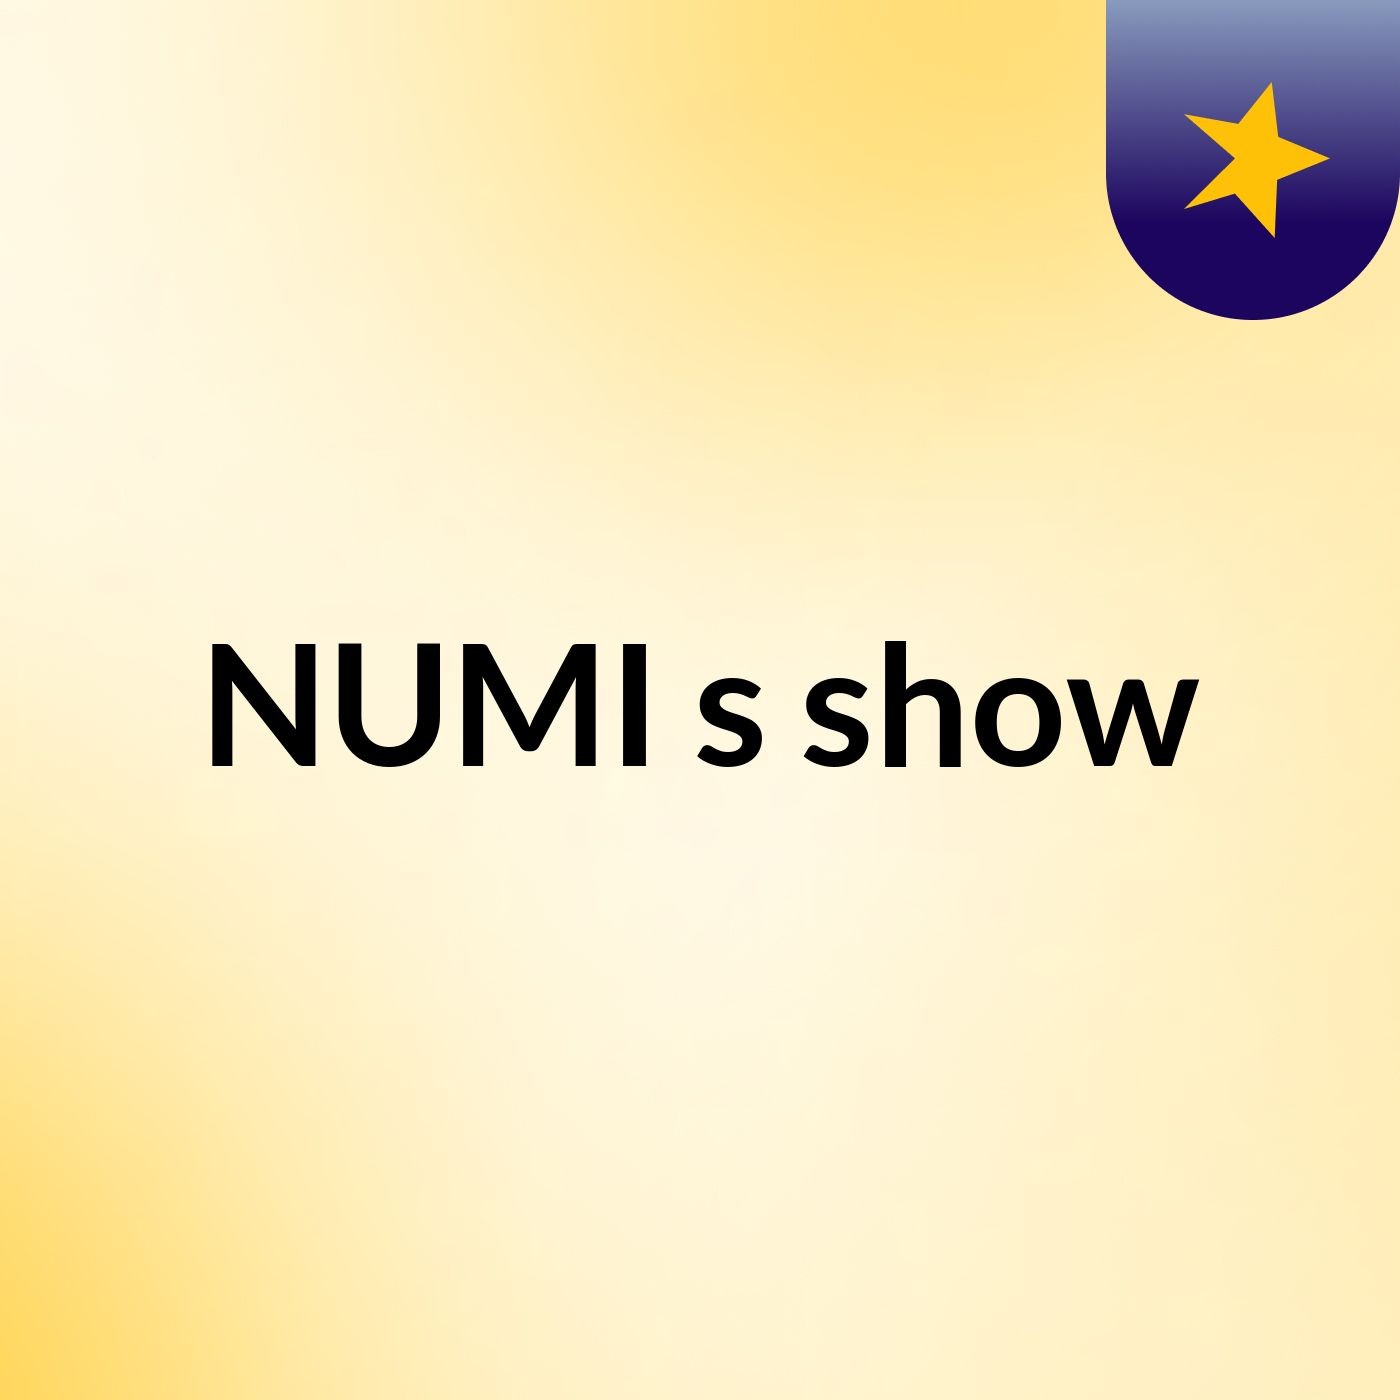 NUMI's show